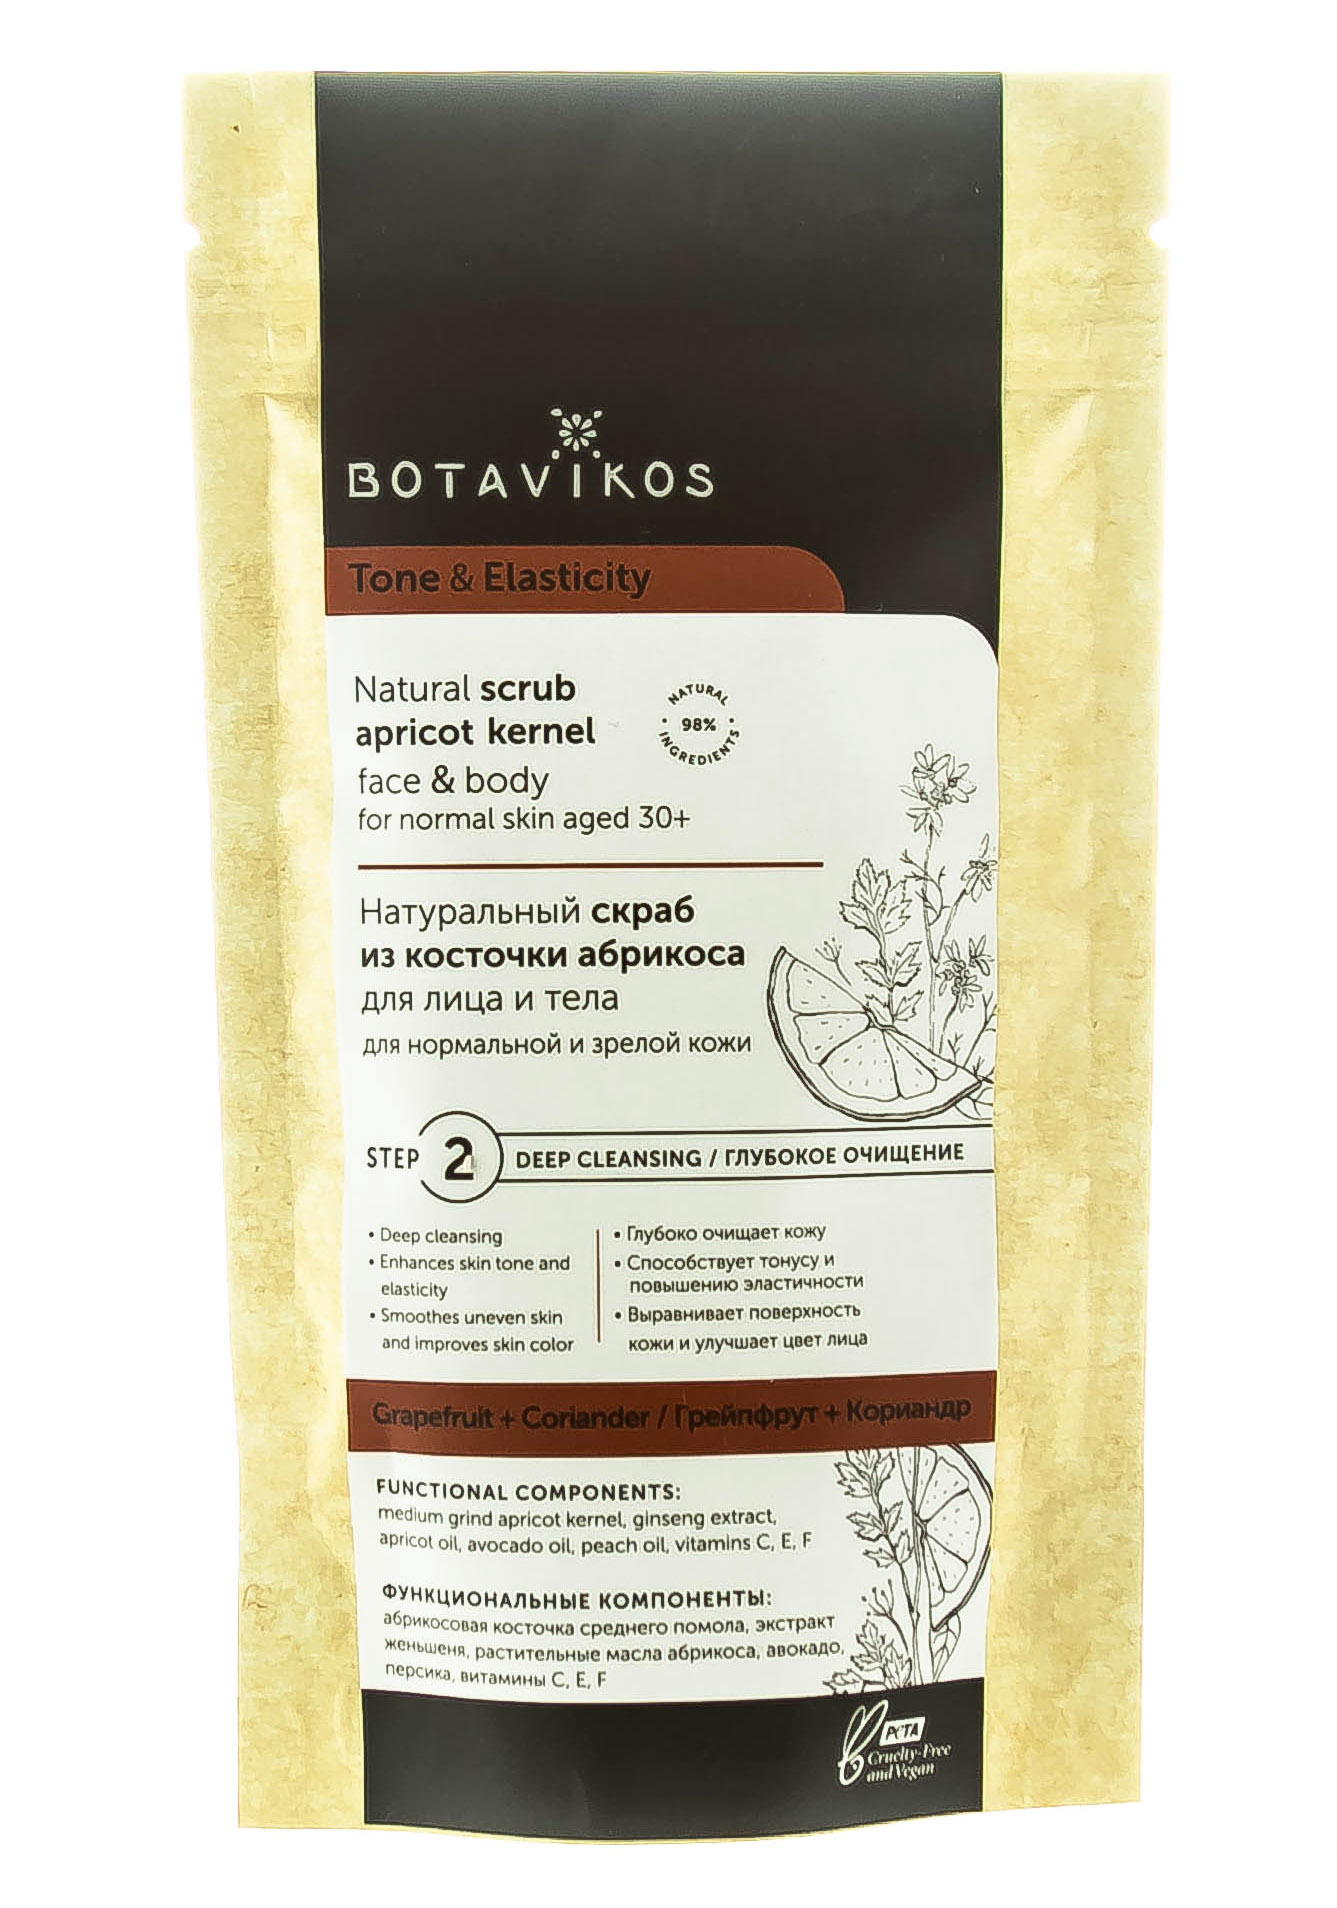 Botavikos Сухой скраб для нормальной и зрелой кожи, 100 г (B